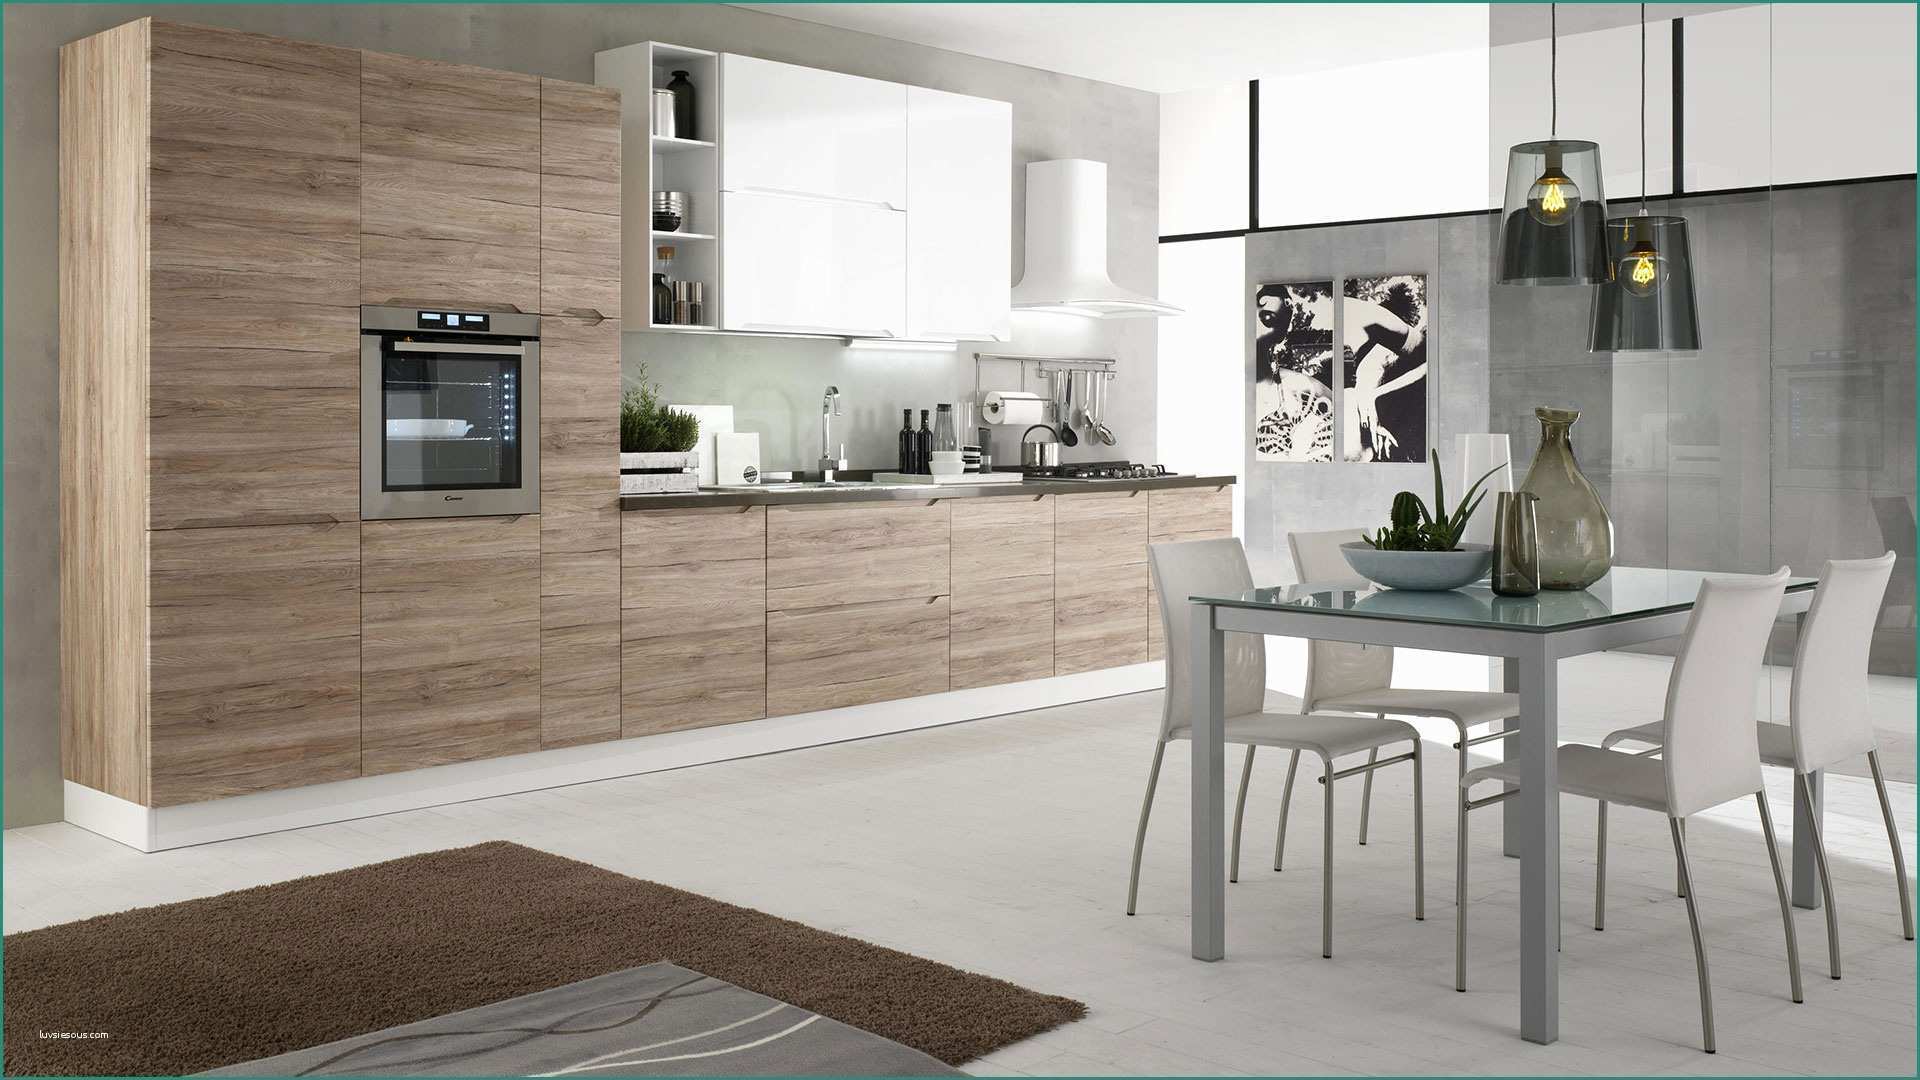 Dimensioni Cucina Con isola E Immagini Di Cucine Moderne Excellent soggiorno Open Space soggiorno